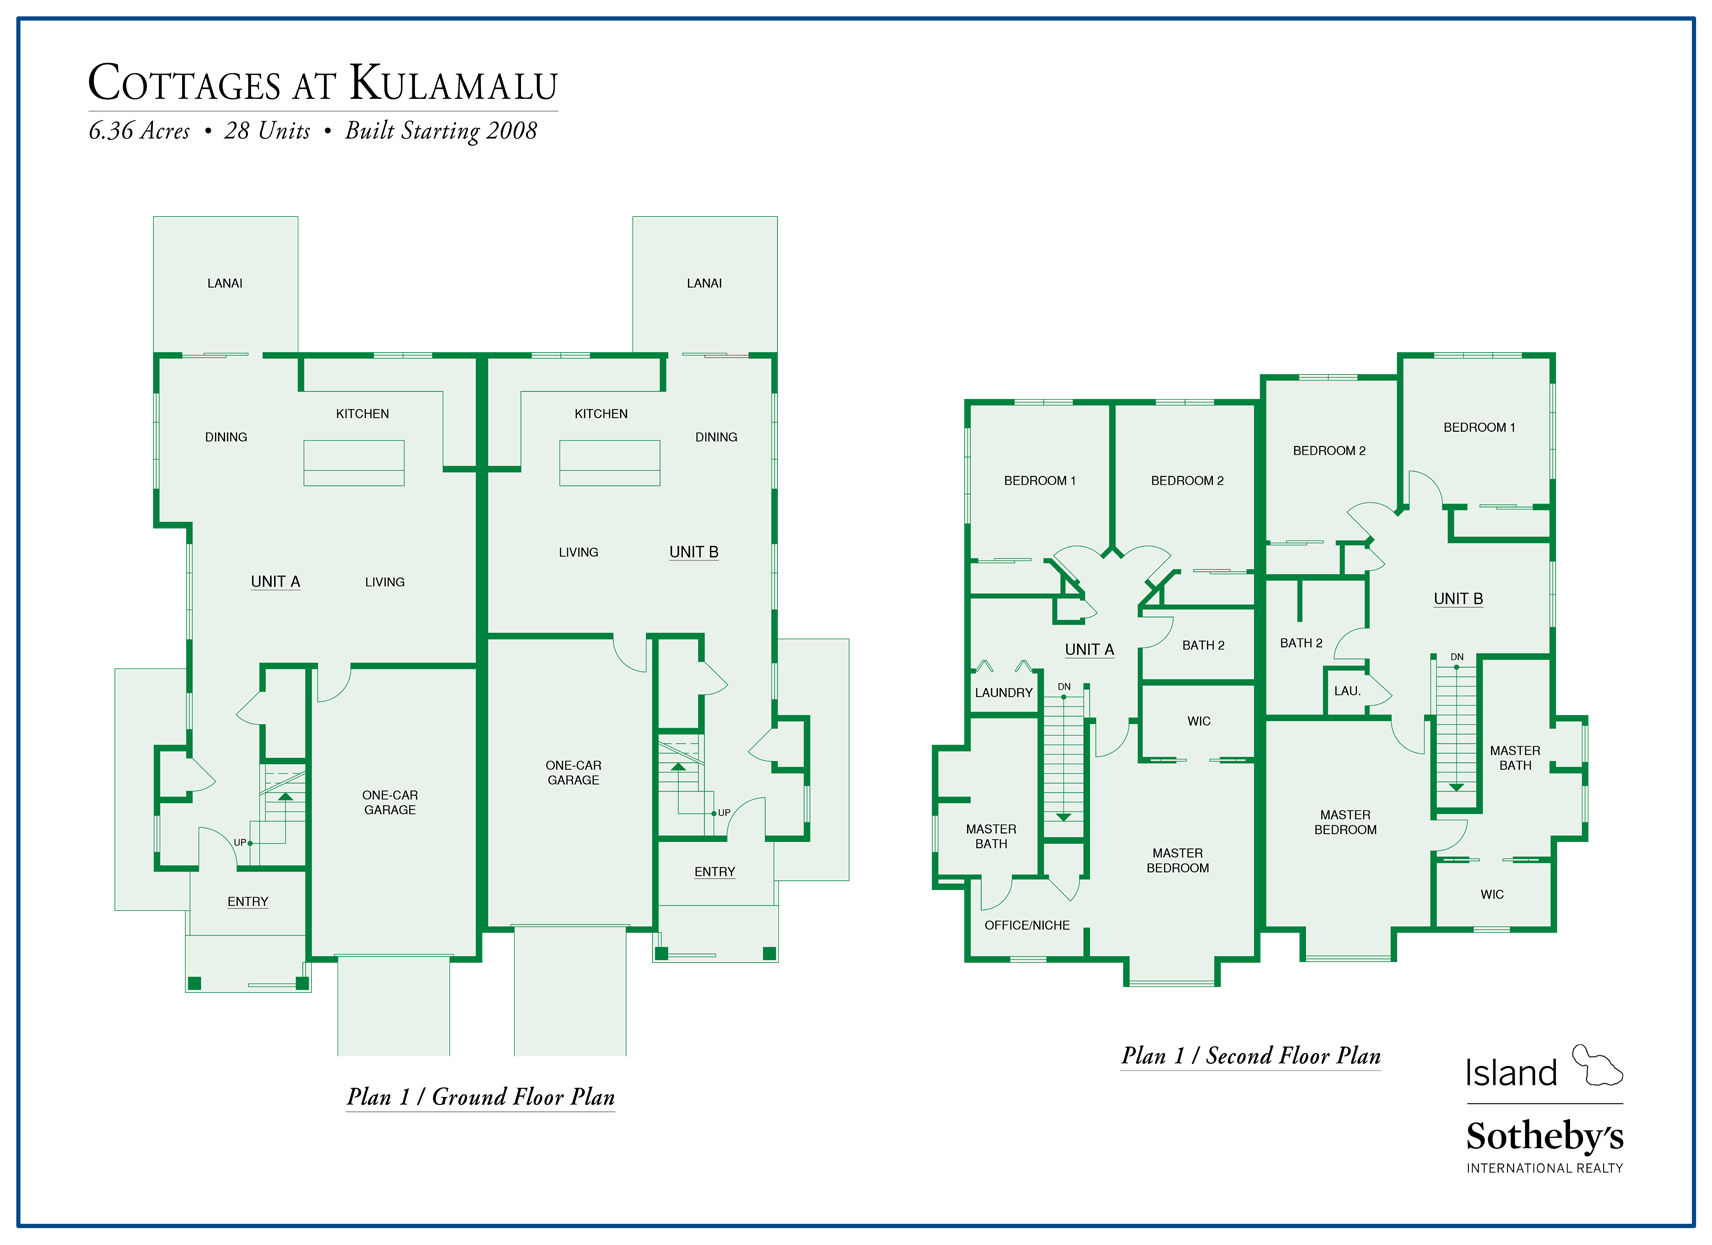 cottages at kulamalu floor plan 1